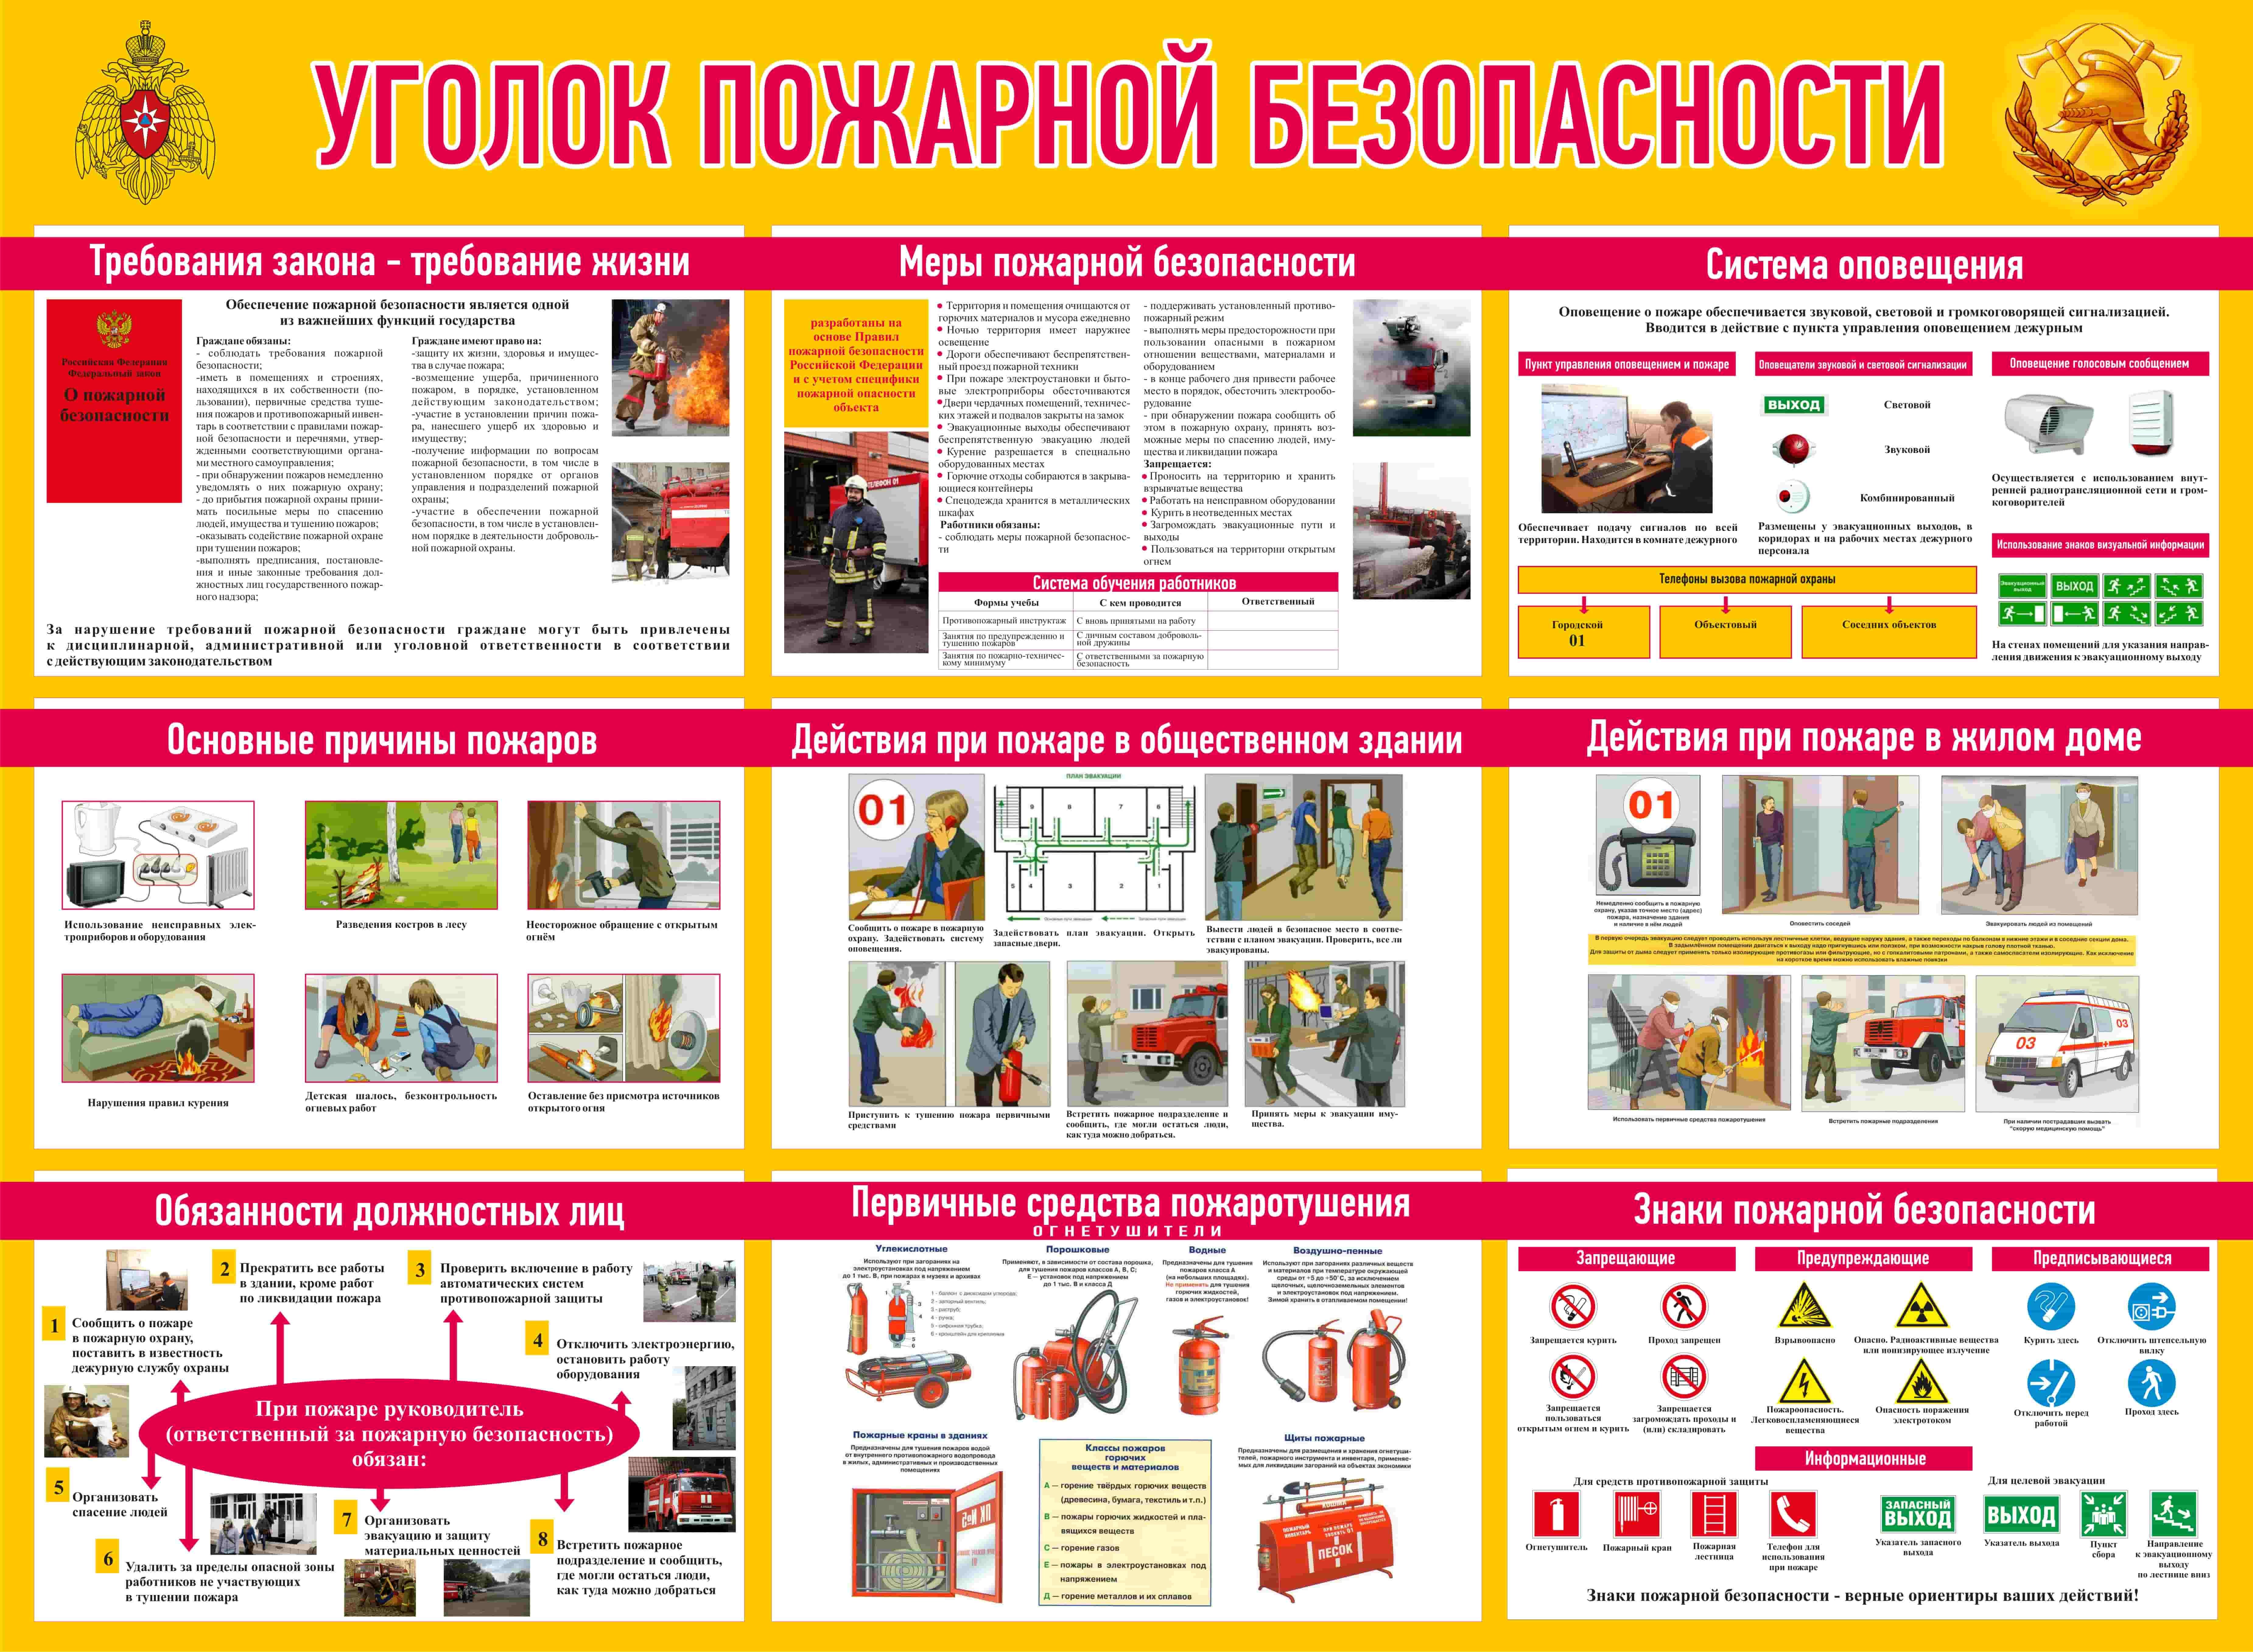 мебельное производство требования пожарной безопасности